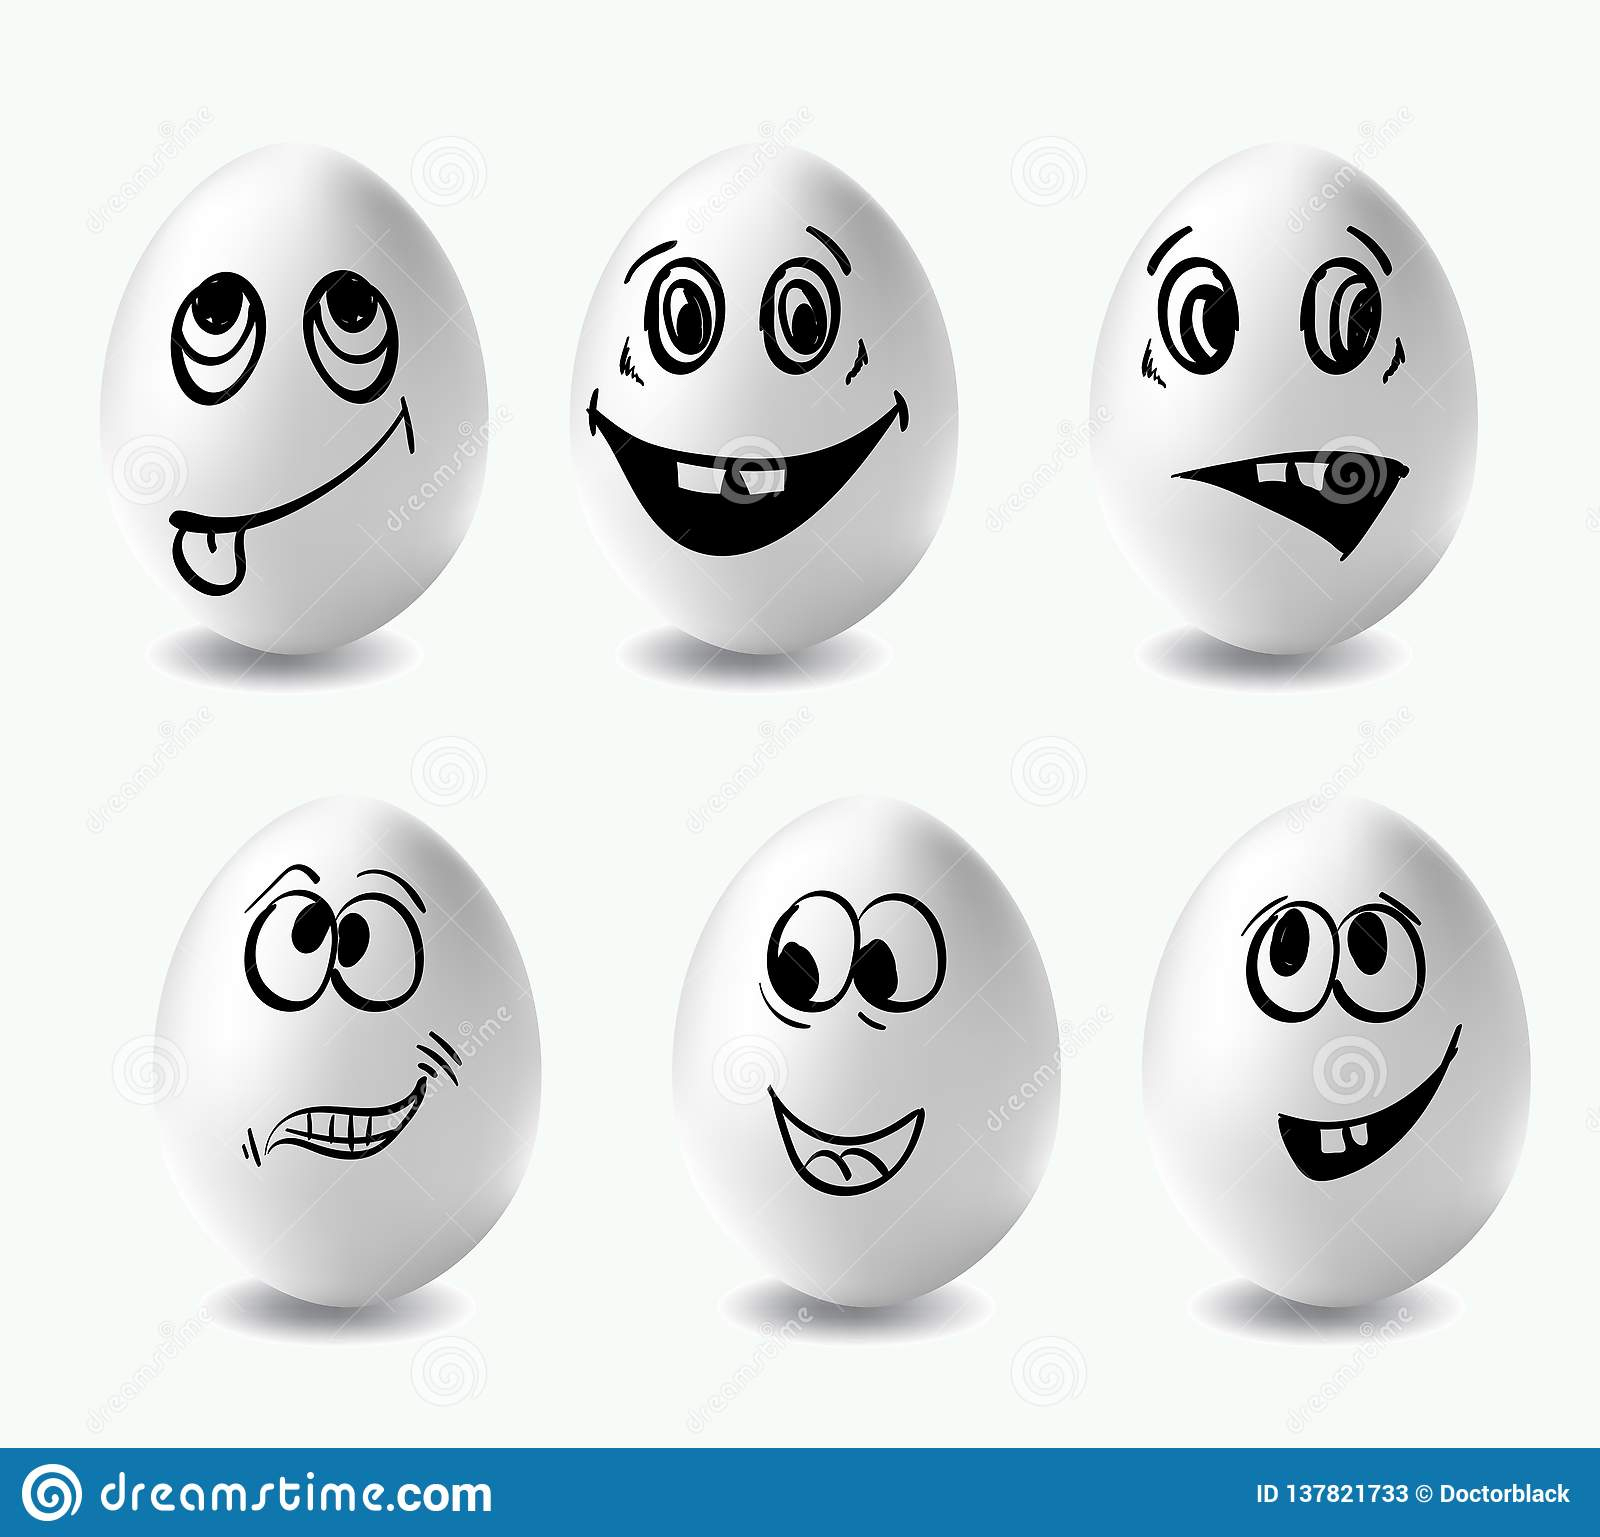 Lustige Ostereier Dieses Ist Bild Von Lustigen Eiern Auf ganzes Lustige Gesichter Auf Eiern